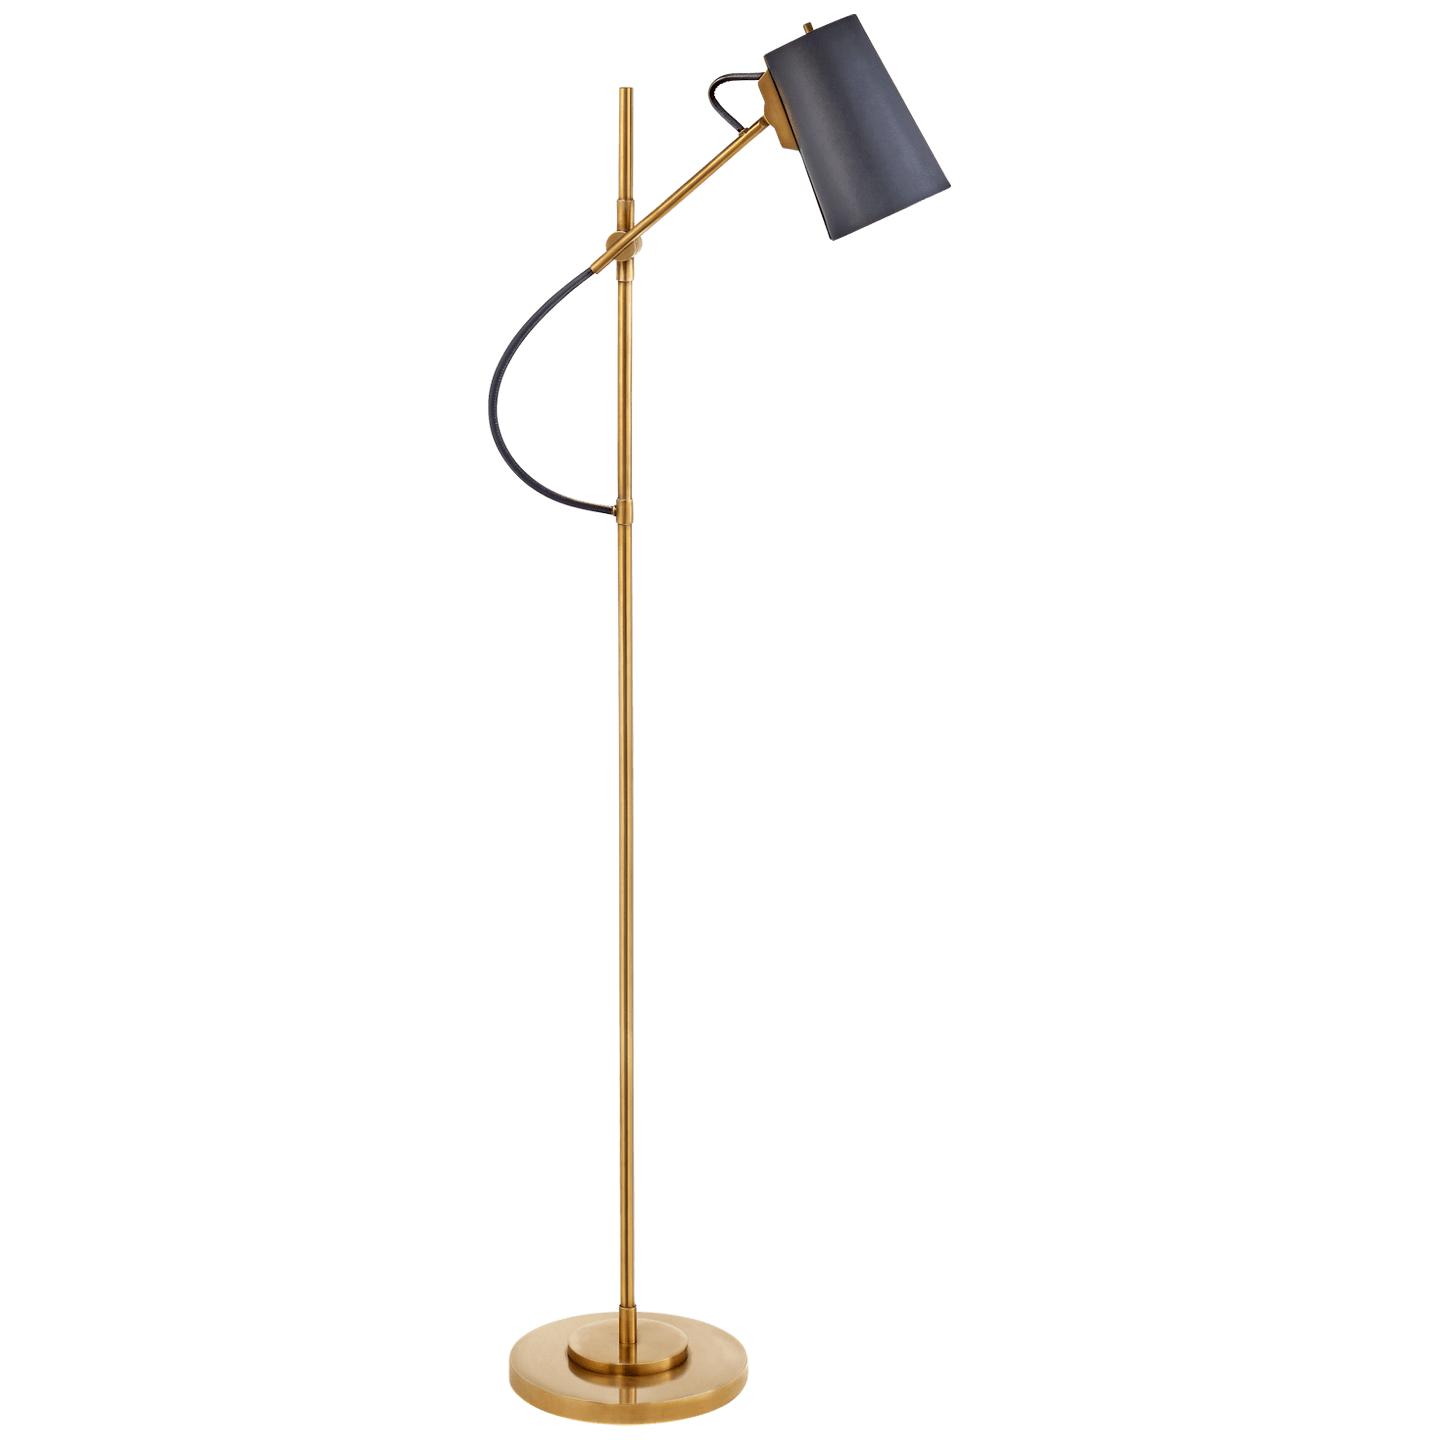 Купить Торшер Benton Adjustable Floor Lamp в интернет-магазине roooms.ru